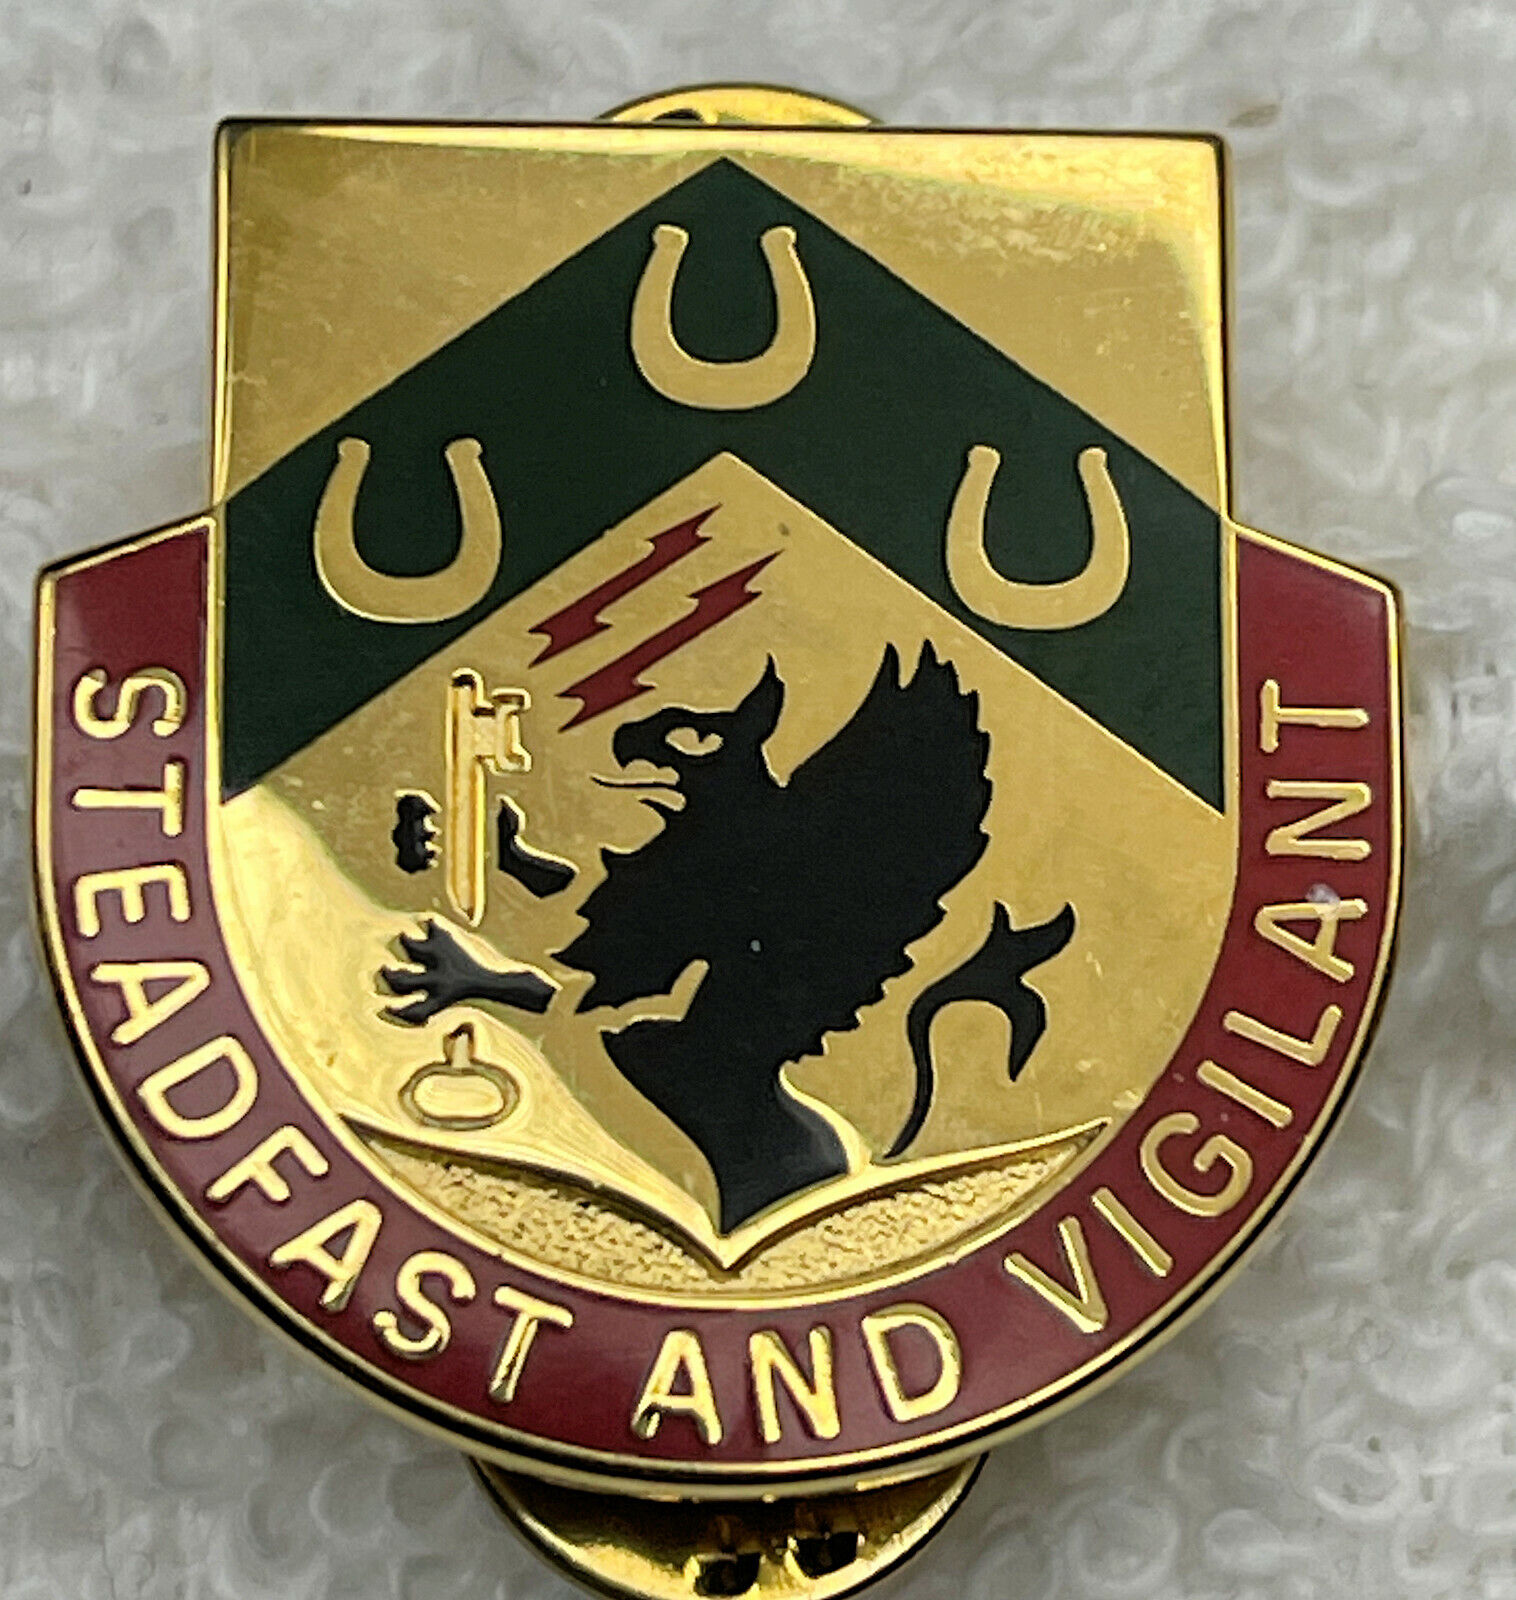 Original:  STB  3 Bde   Cavalry   DI / DUI / crest   CB   A  1-38